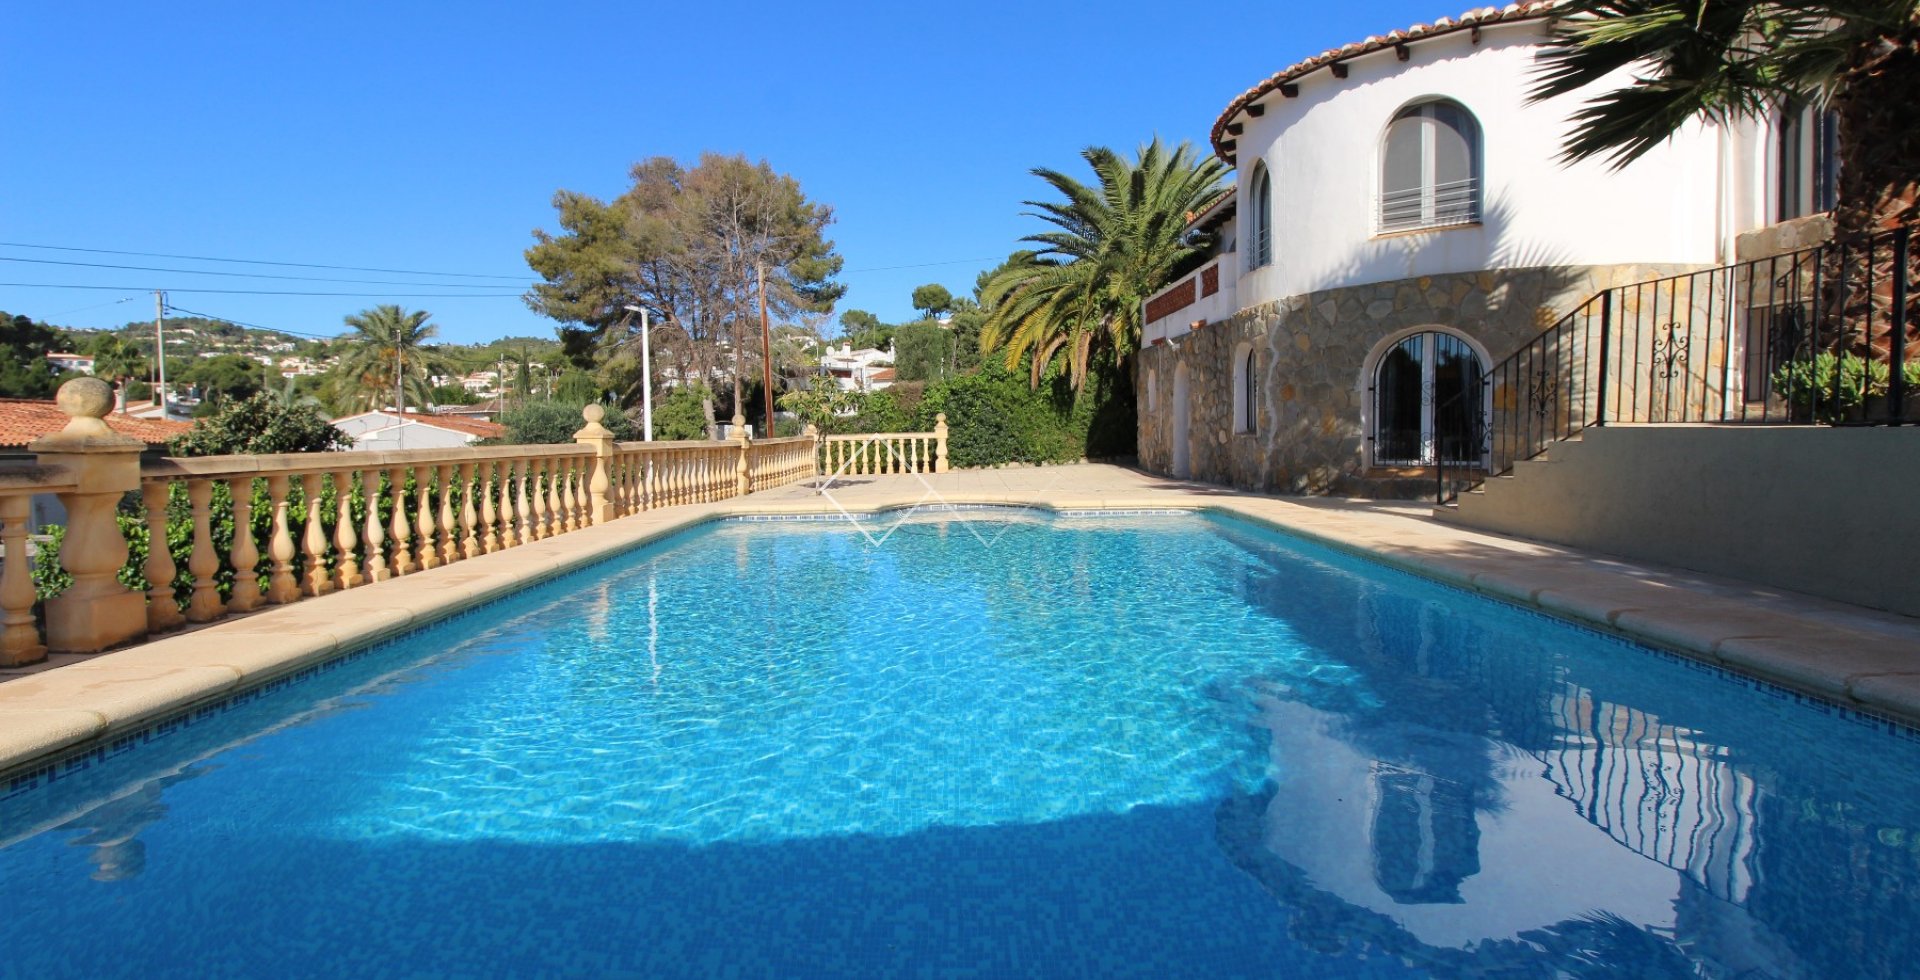 Pool - Renovierte Villa zu verkaufen in Benissa, 400m vom Strand